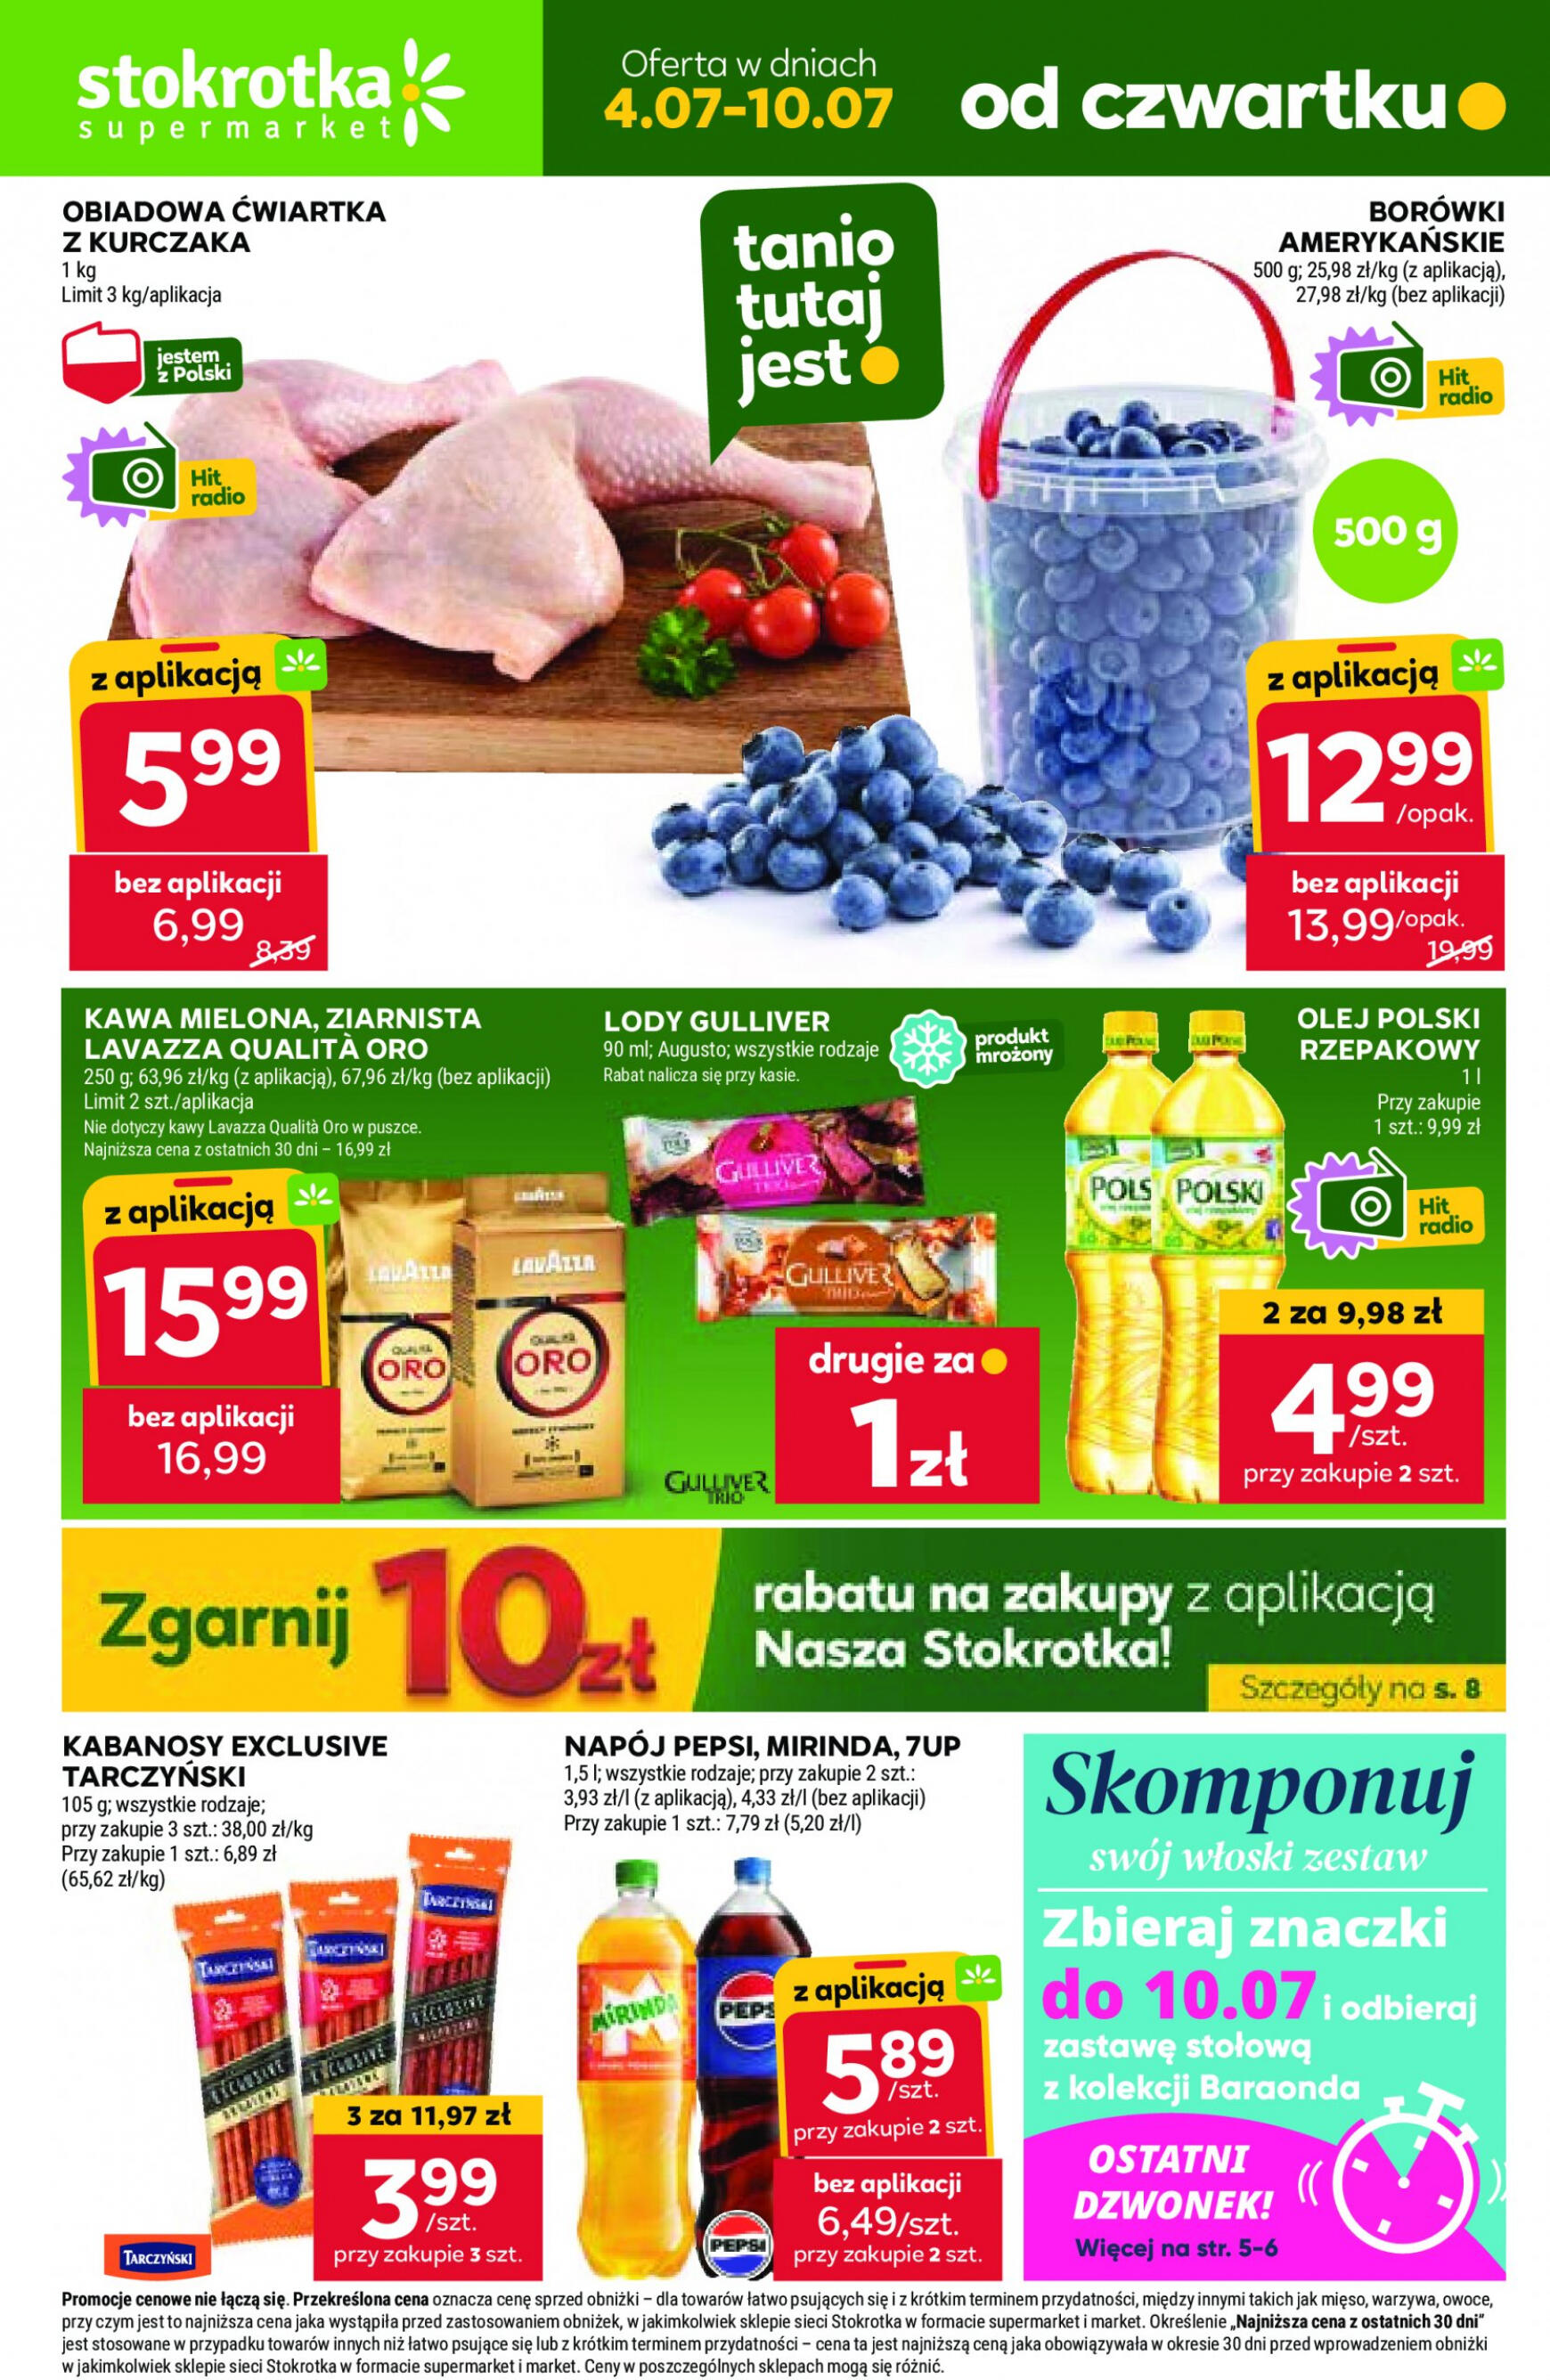 stokrotka - Stokrotka - Supermarket gazetka aktualna ważna od 04.07. - 10.07.